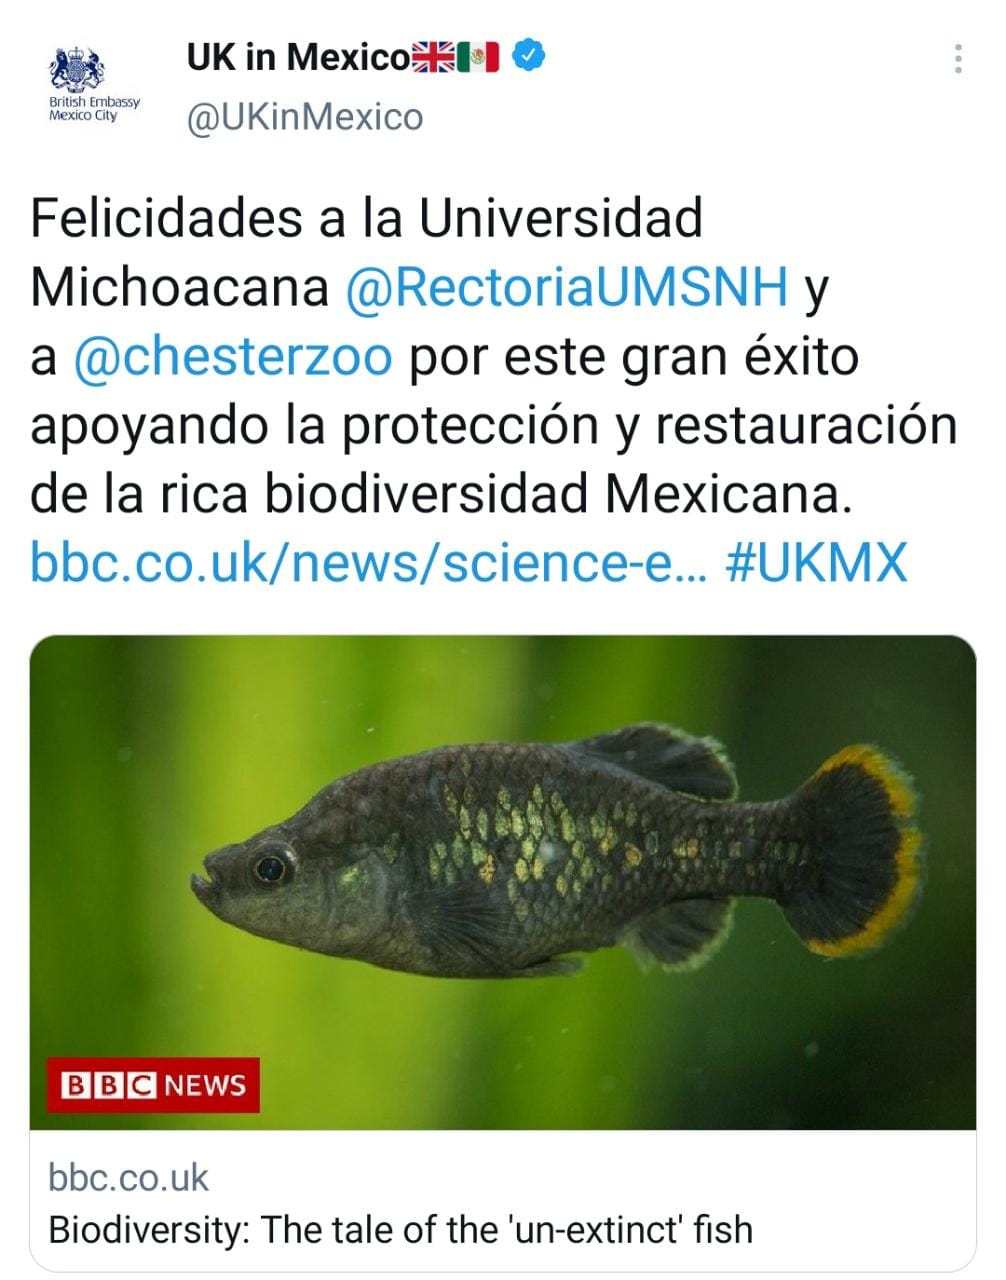 La embajada de Reino Unido en México, celebró el resultado del proyecto de conservación encabezado por la UMSNH